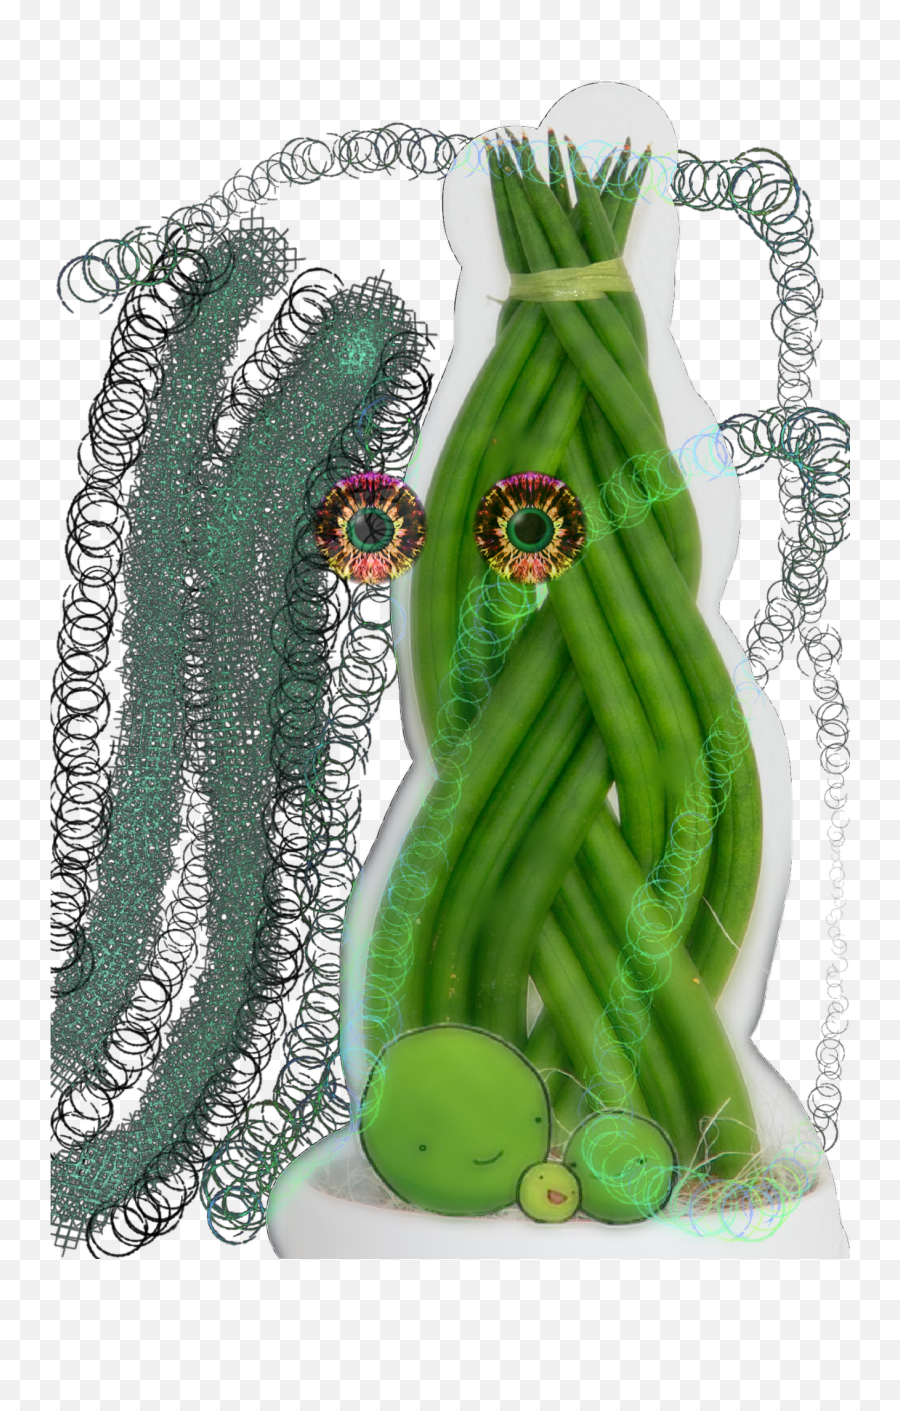 Greenbean Crazy - Dracaena Angolensis Emoji,Asparagus Emoji